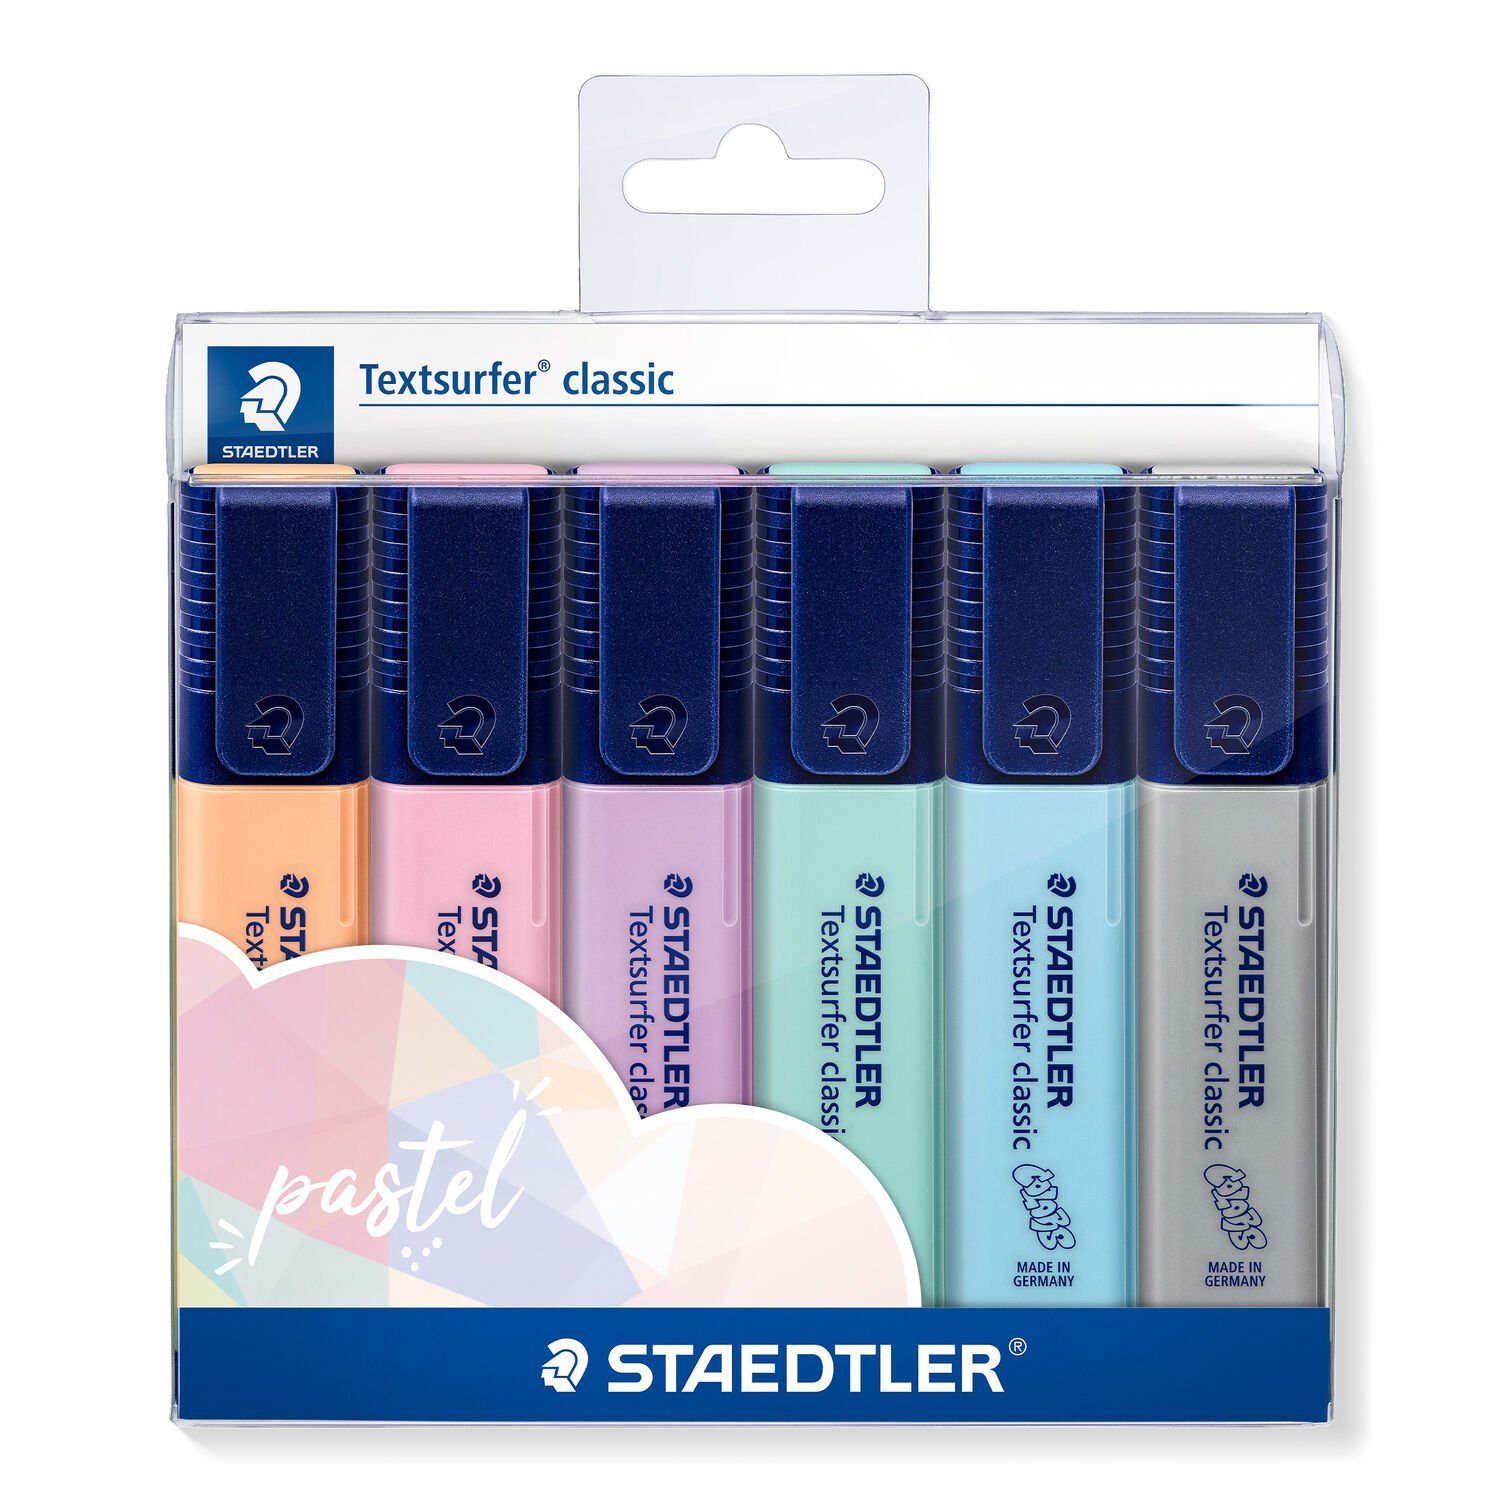 Emballage portefeuille contenant 6 surligneurs Textsurfer classic aux couleurs assorties – collection pastel